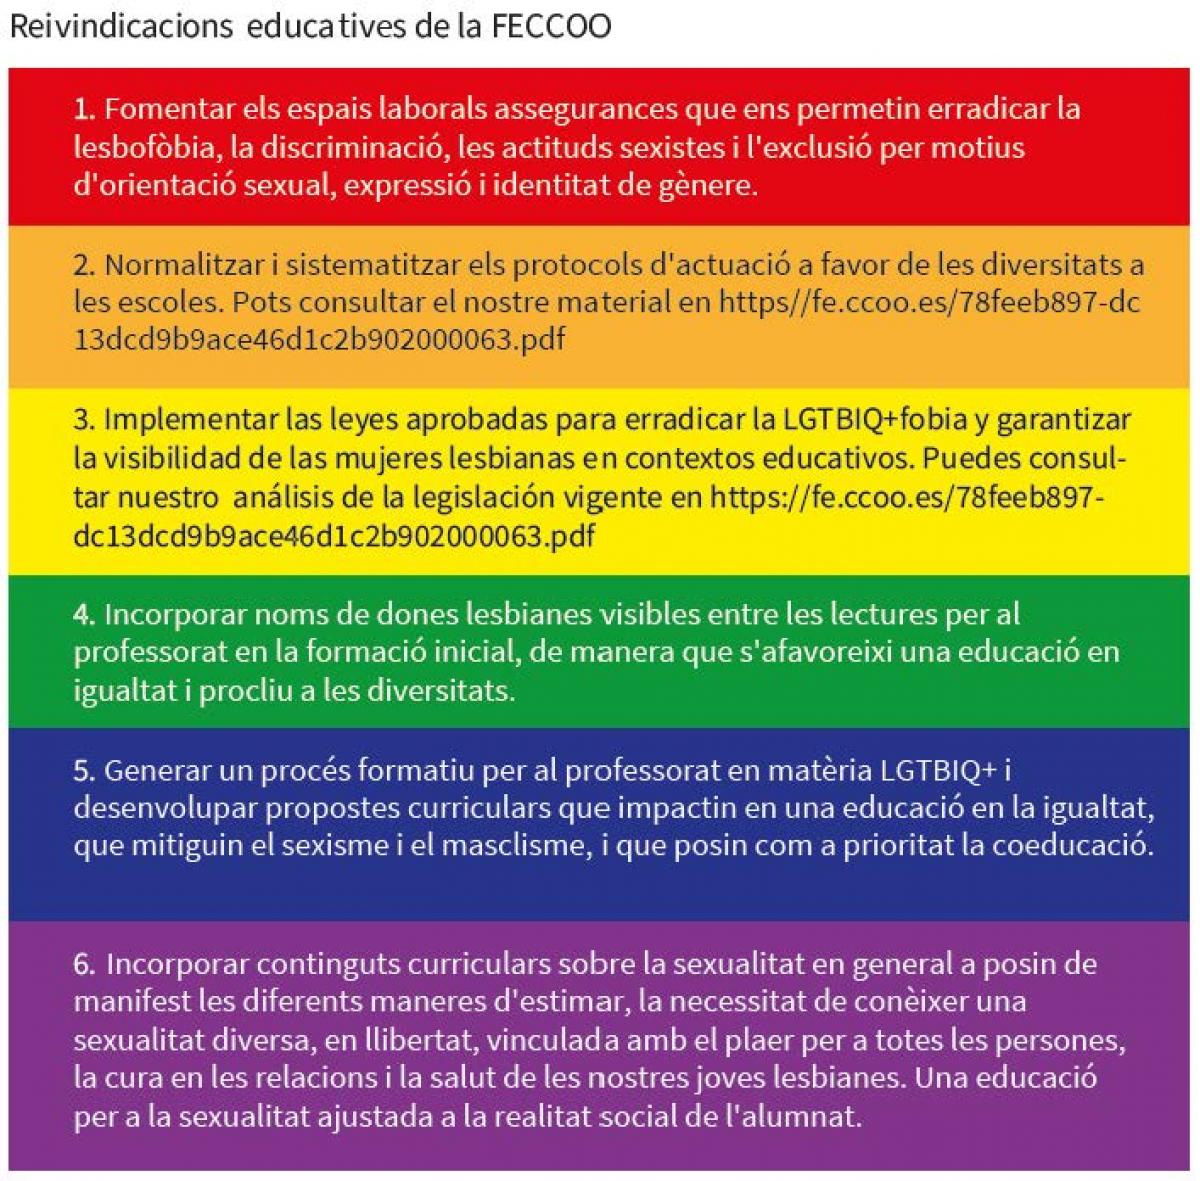 Reivindicacions educatives LGTBIQ+ de la FECCOO